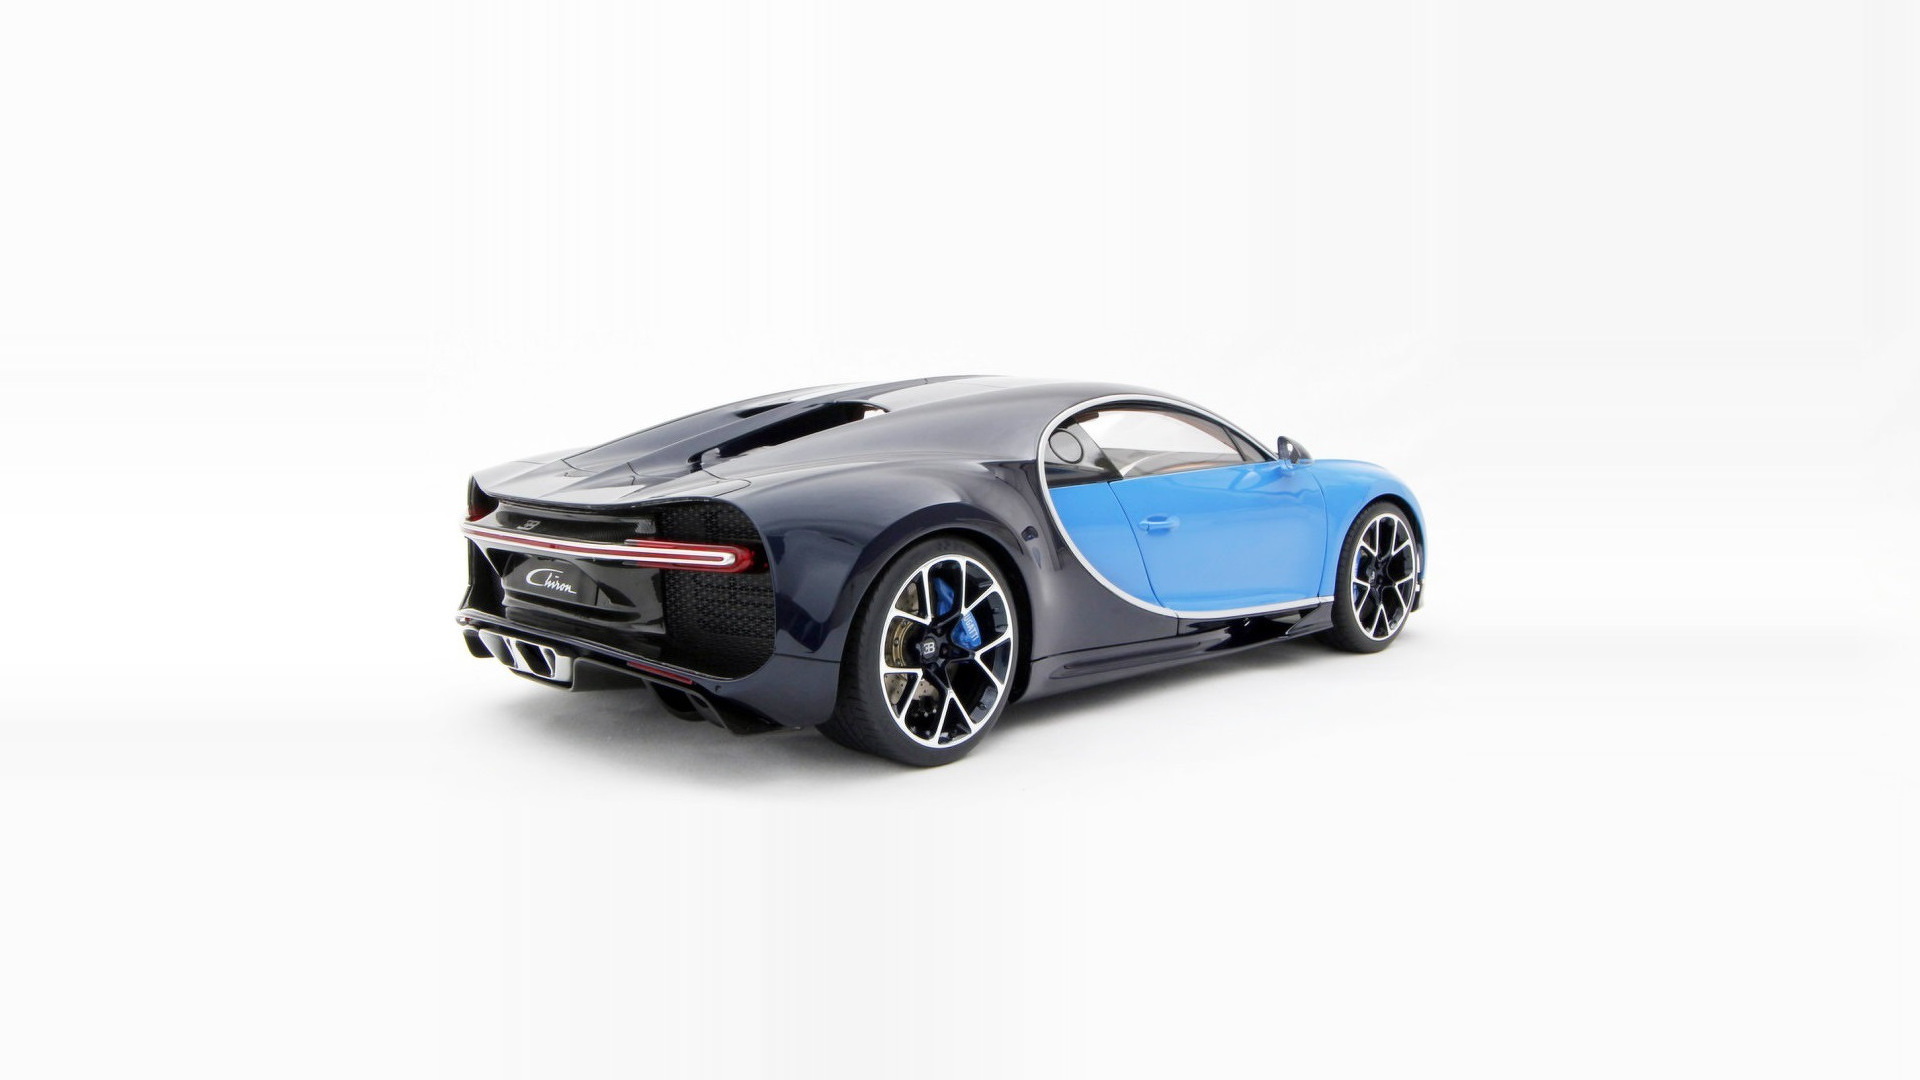 Amalgam Collection created a 1:8 scale Bugatti Chiron